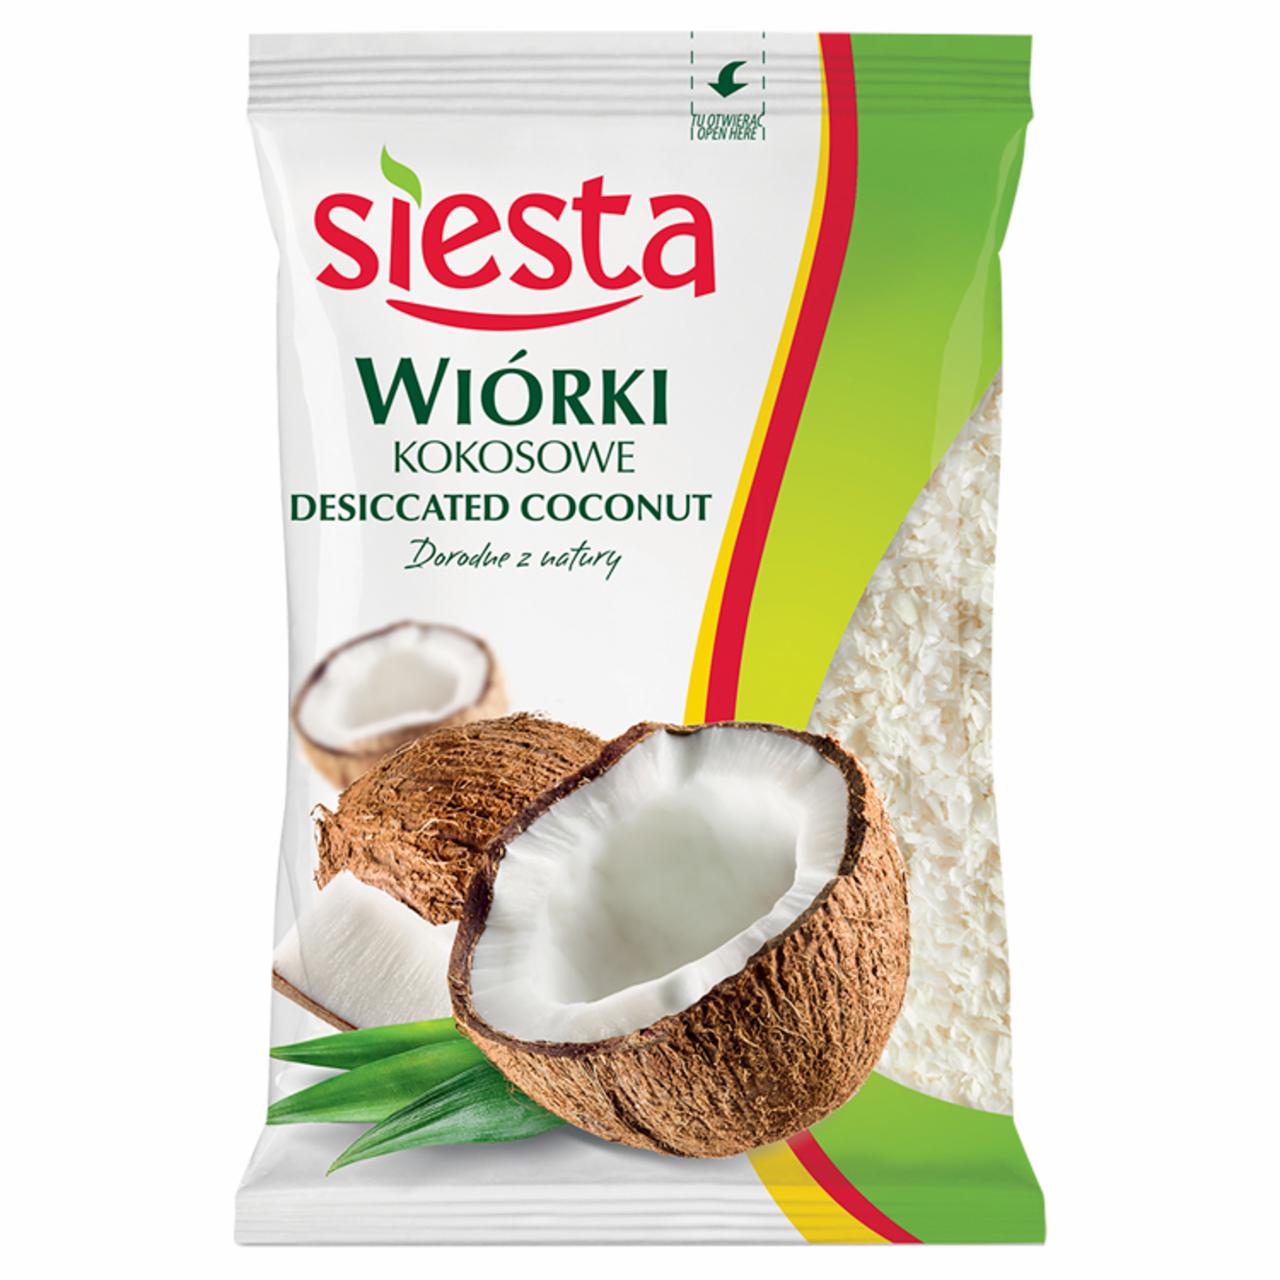 Zdjęcia - Wiórki kokosowe Siesta